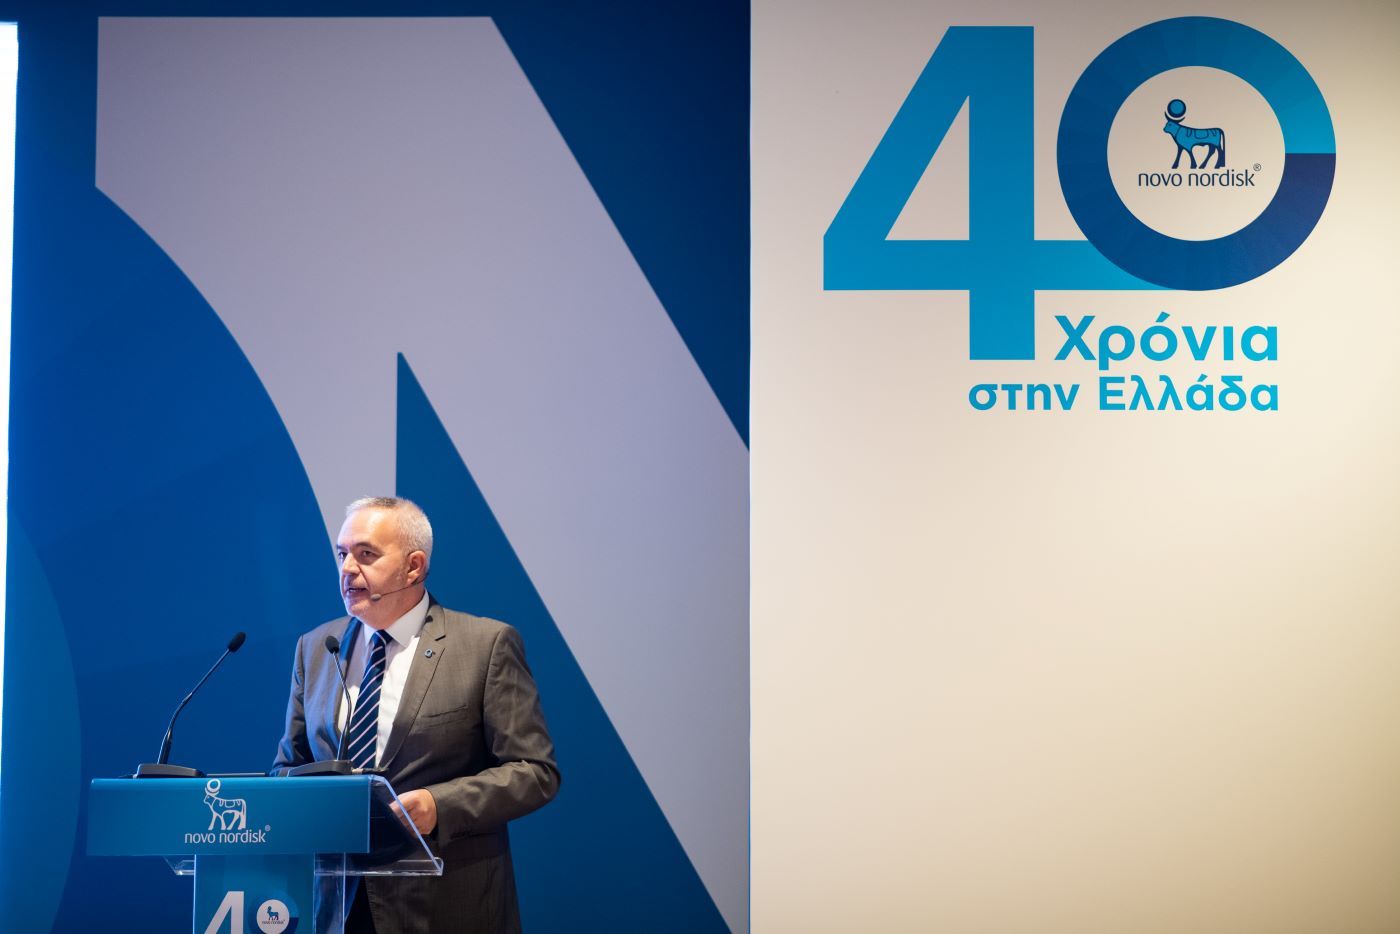 Τα 40 χρόνια παρουσίας στην Ελλάδα γιόρτασε η Novo Nordisk